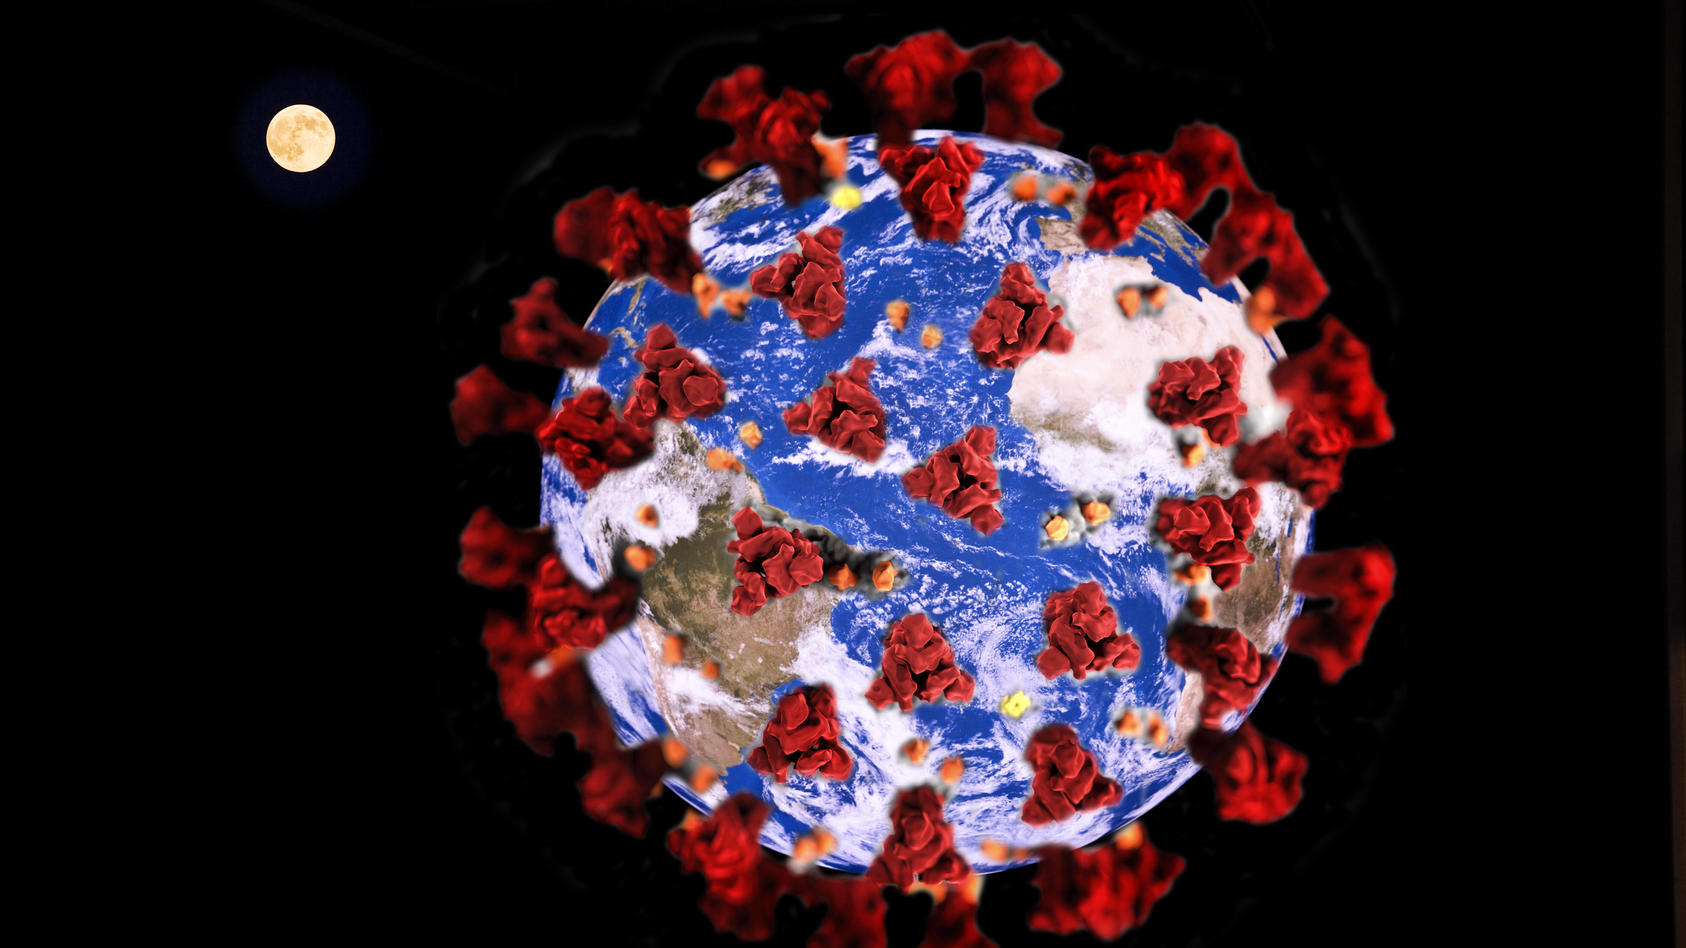 Erde mit Coronavirus, Symboldbild fuer die weltweite Corona-Pandemie, Fotomantage world with Covid-19 BLWS613312 Copyright: xblickwinkel/S.xZiesex 